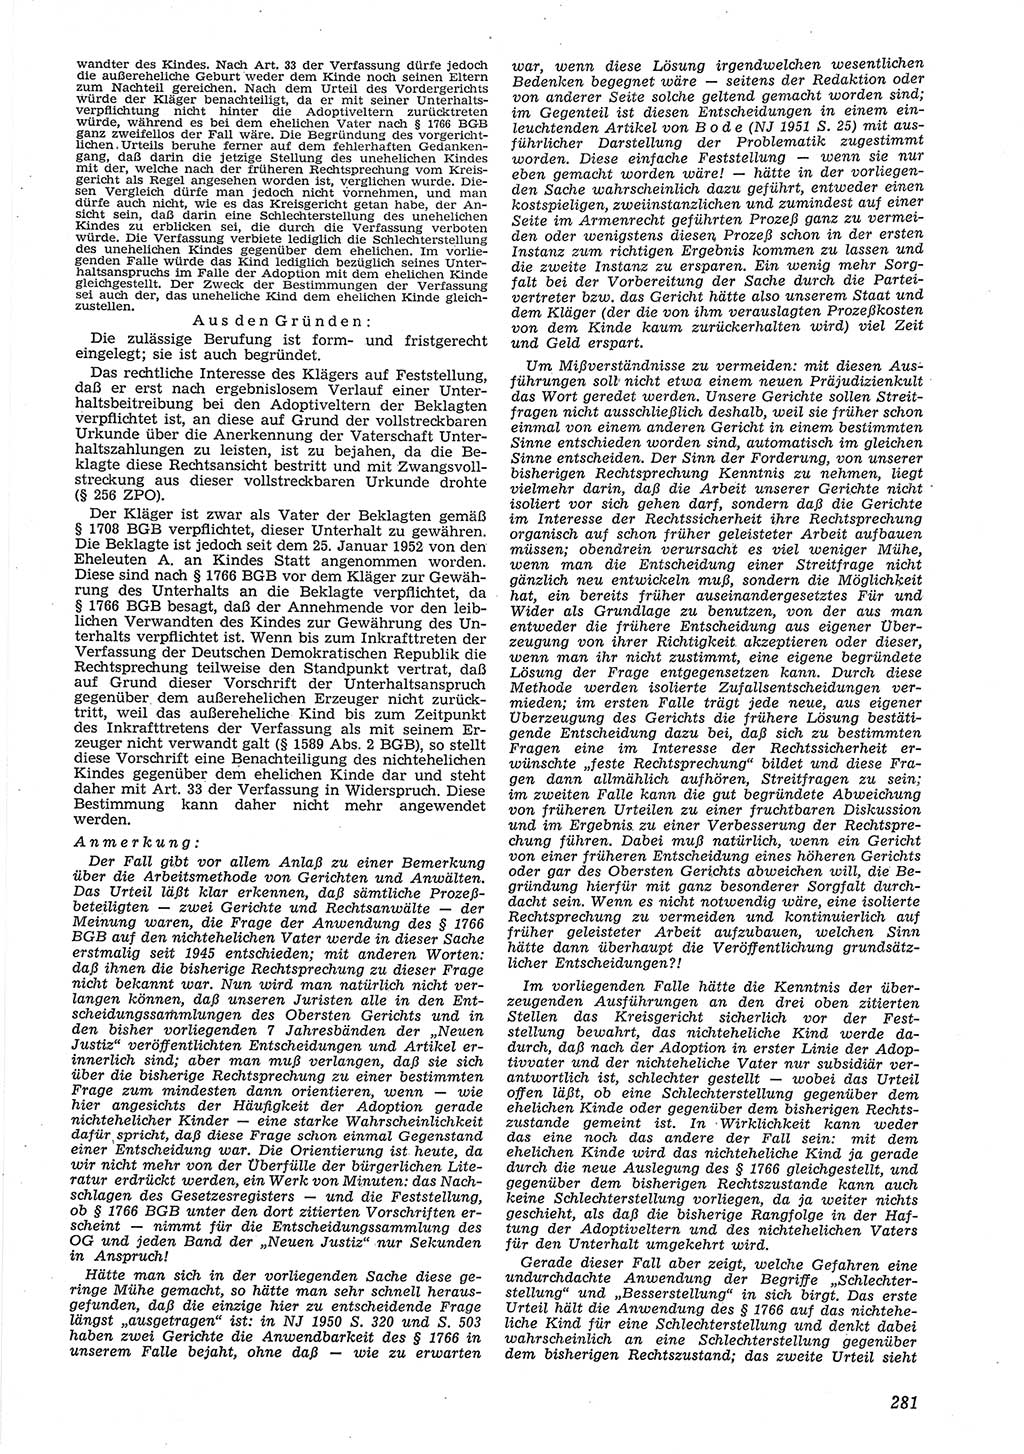 Neue Justiz (NJ), Zeitschrift für Recht und Rechtswissenschaft [Deutsche Demokratische Republik (DDR)], 8. Jahrgang 1954, Seite 281 (NJ DDR 1954, S. 281)